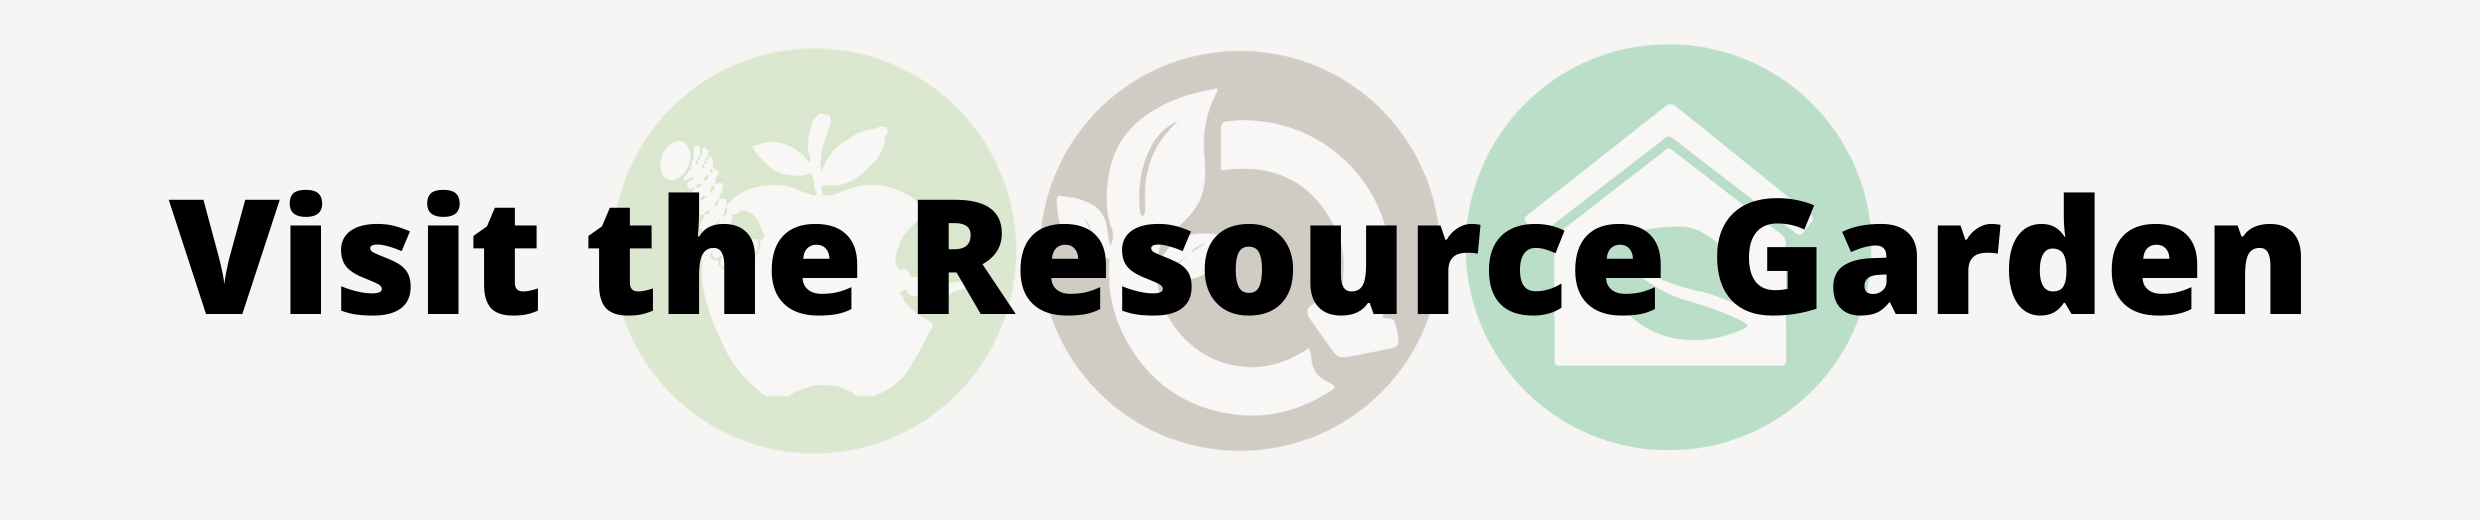 Visit the Resource Garden